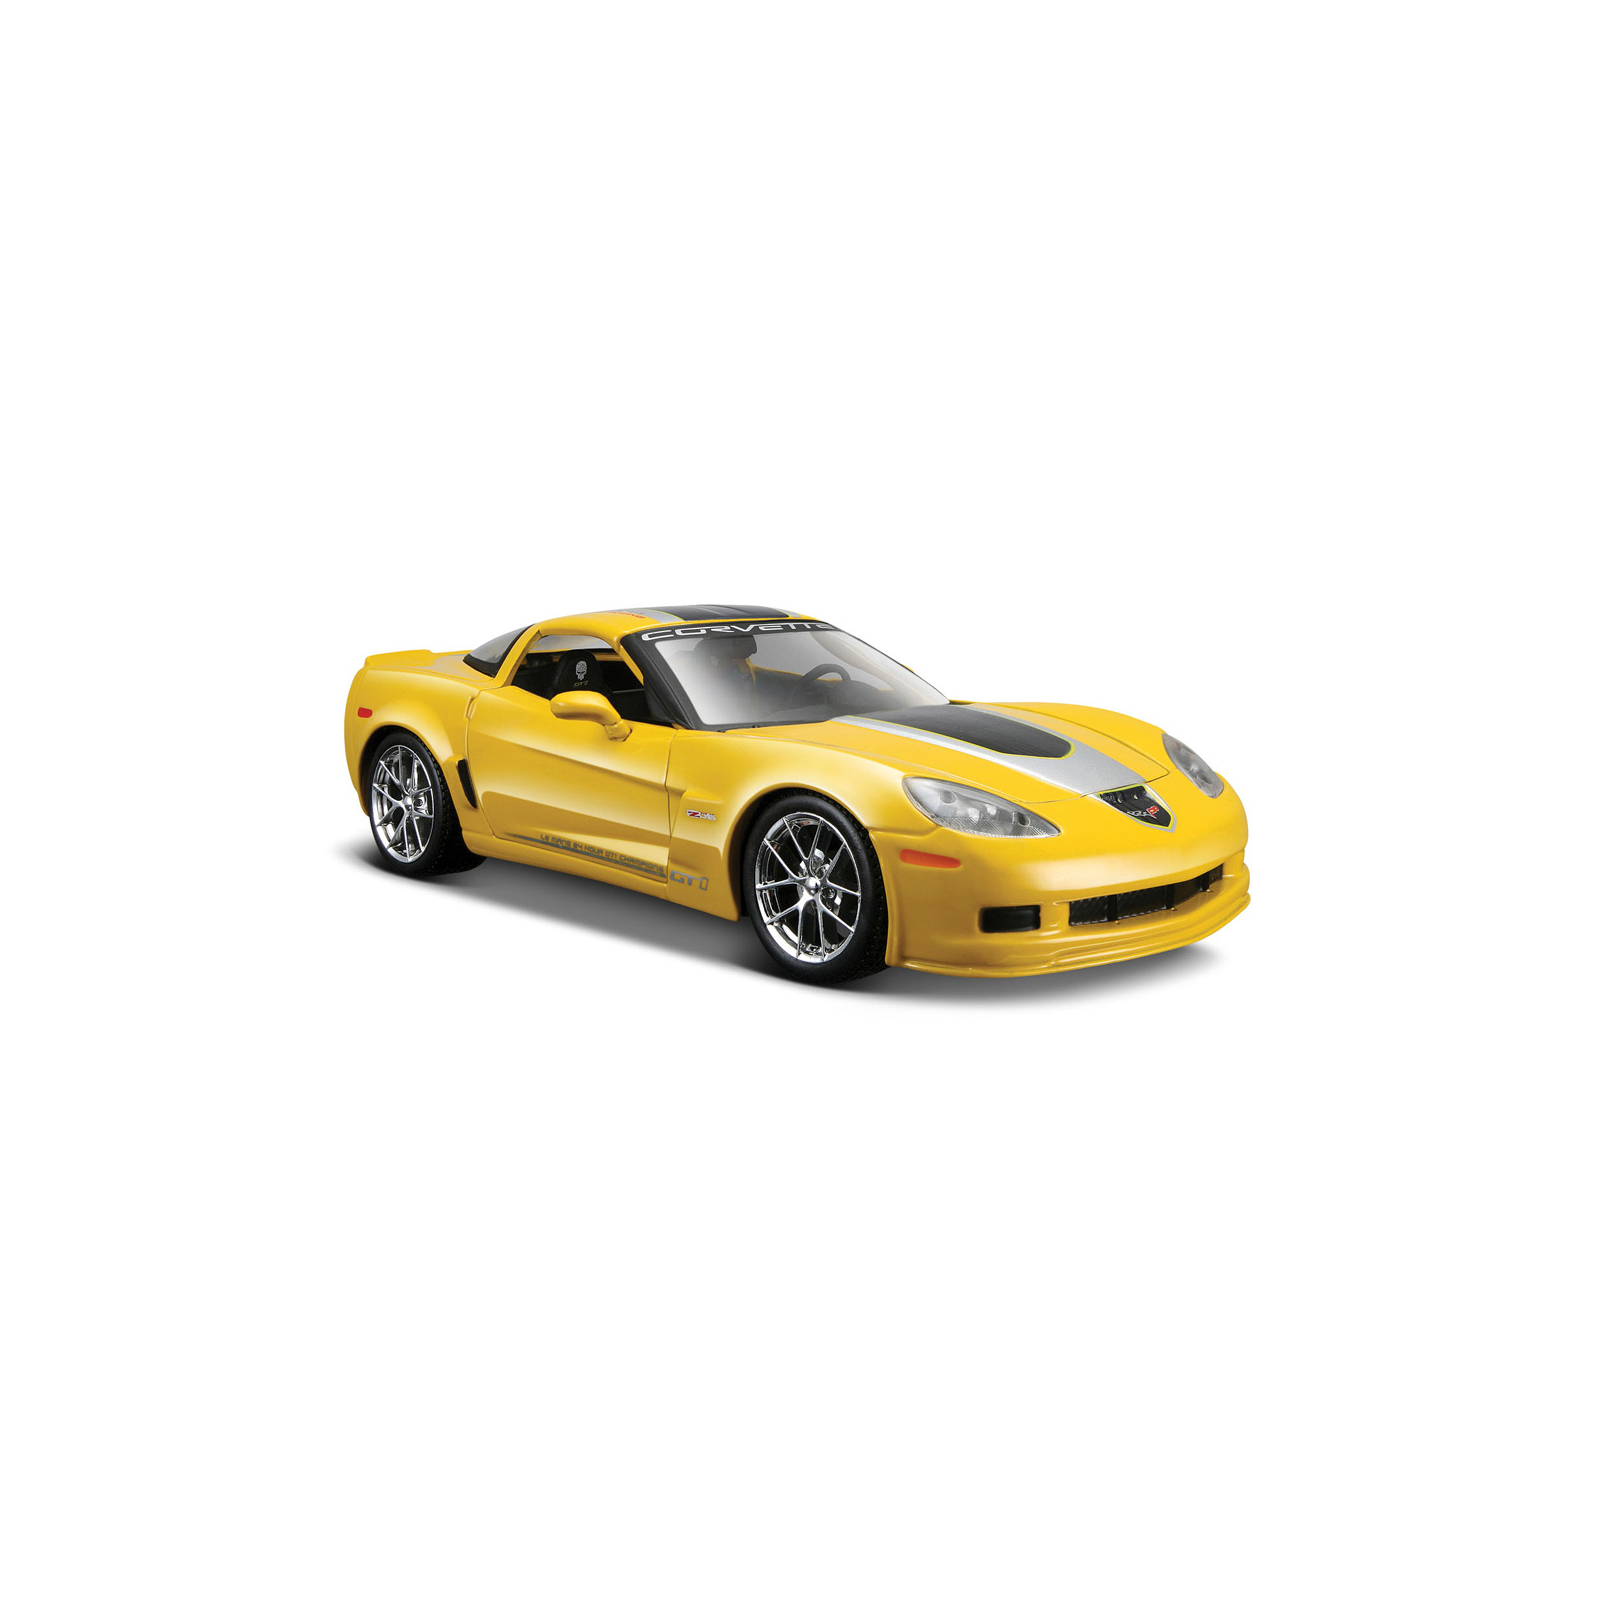 Машина Maisto Chevrolet Corvette Z06 GT1 2009 (1:24) жовтий (31203 yellow)